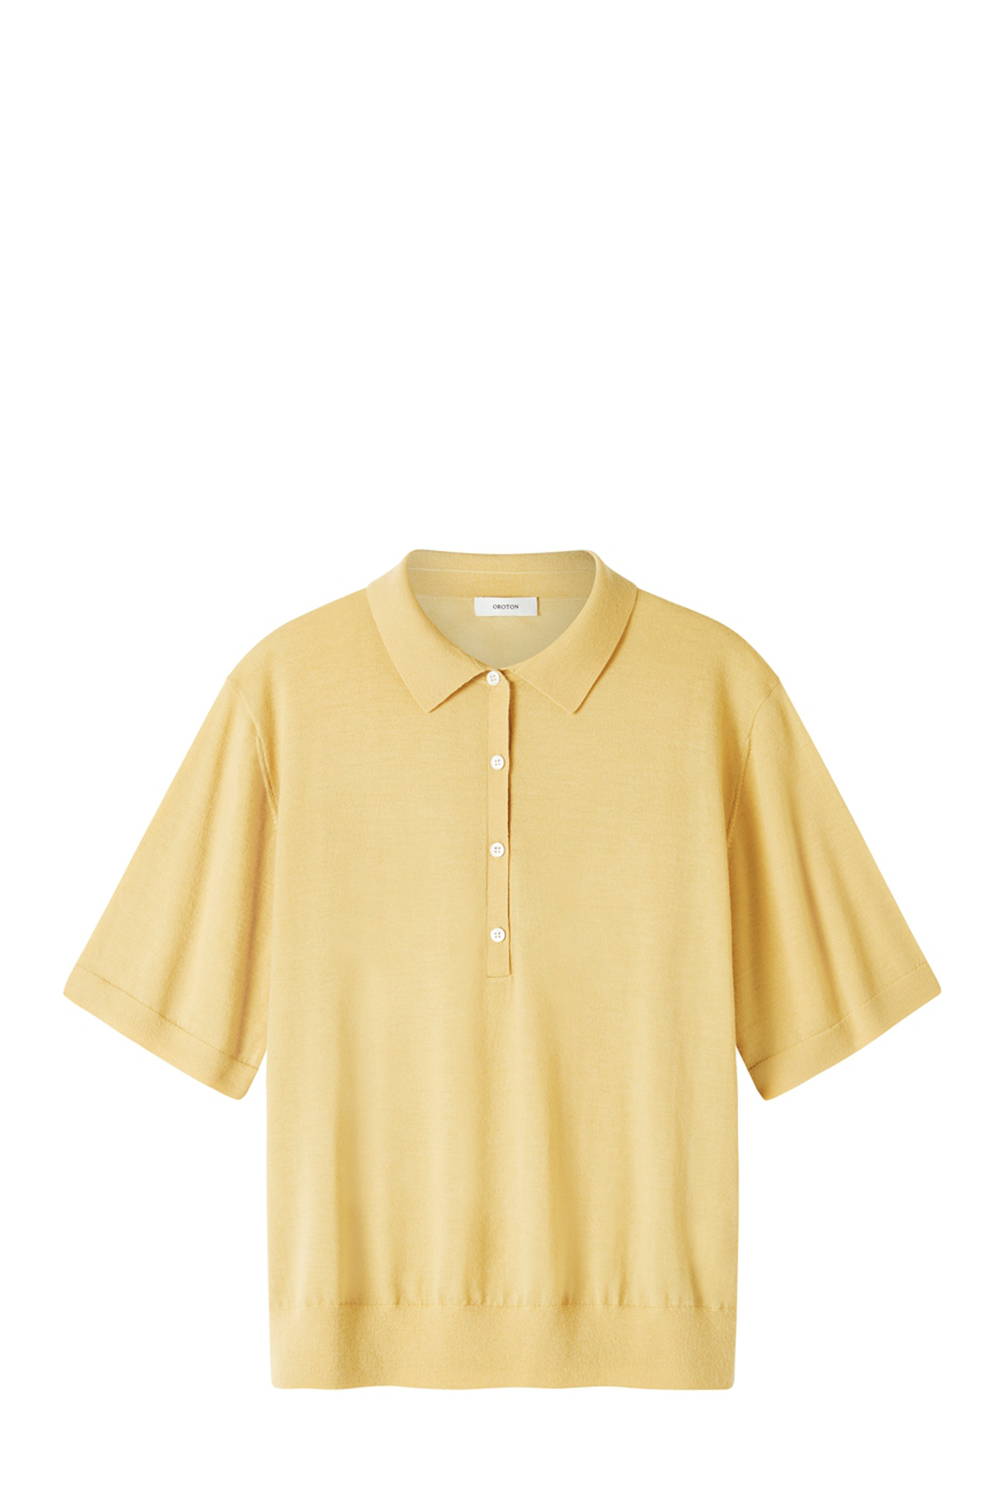 Oroton Knit Polo Shirt in Yellow Citron